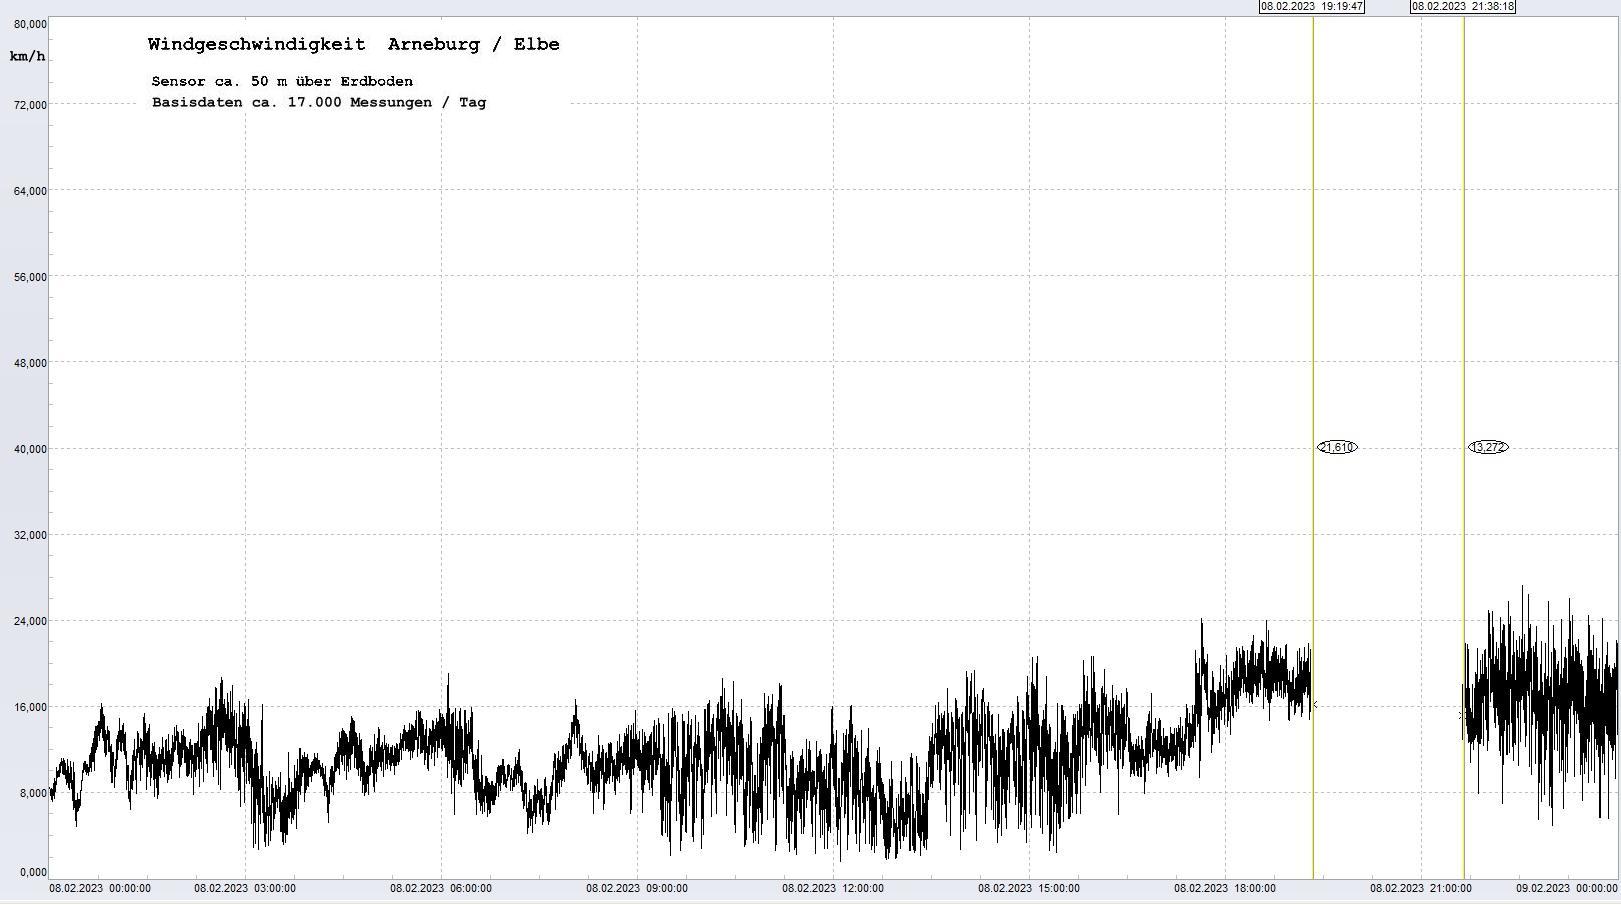 Arneburg Tages-Diagramm Winddaten, 08.02.2023
  Diagramm, Sensor auf Gebude, ca. 50 m ber Erdboden, Basis: 5s-Aufzeichnung